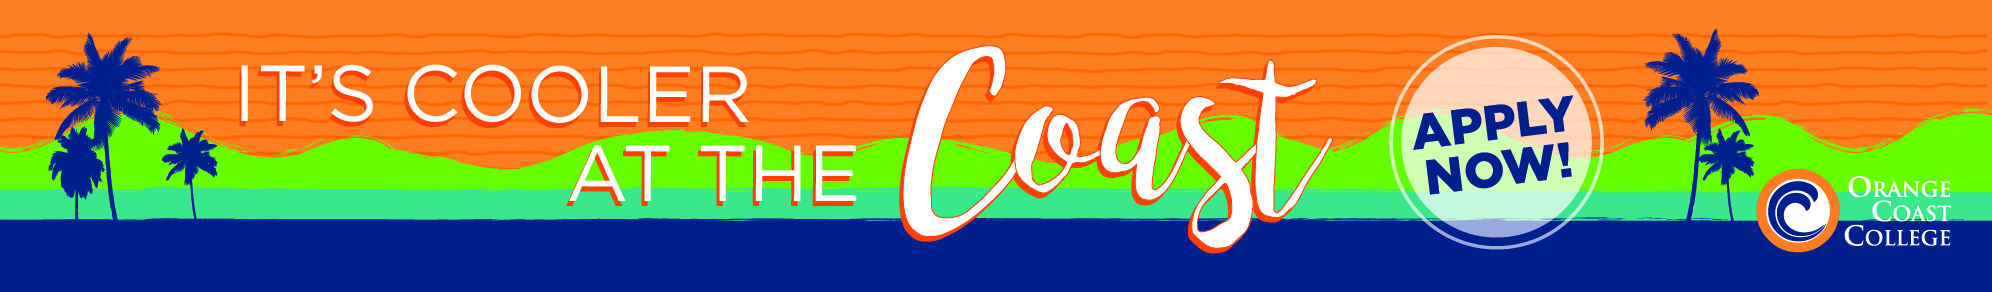 Orange Coast College: It's Cooler At The Coast